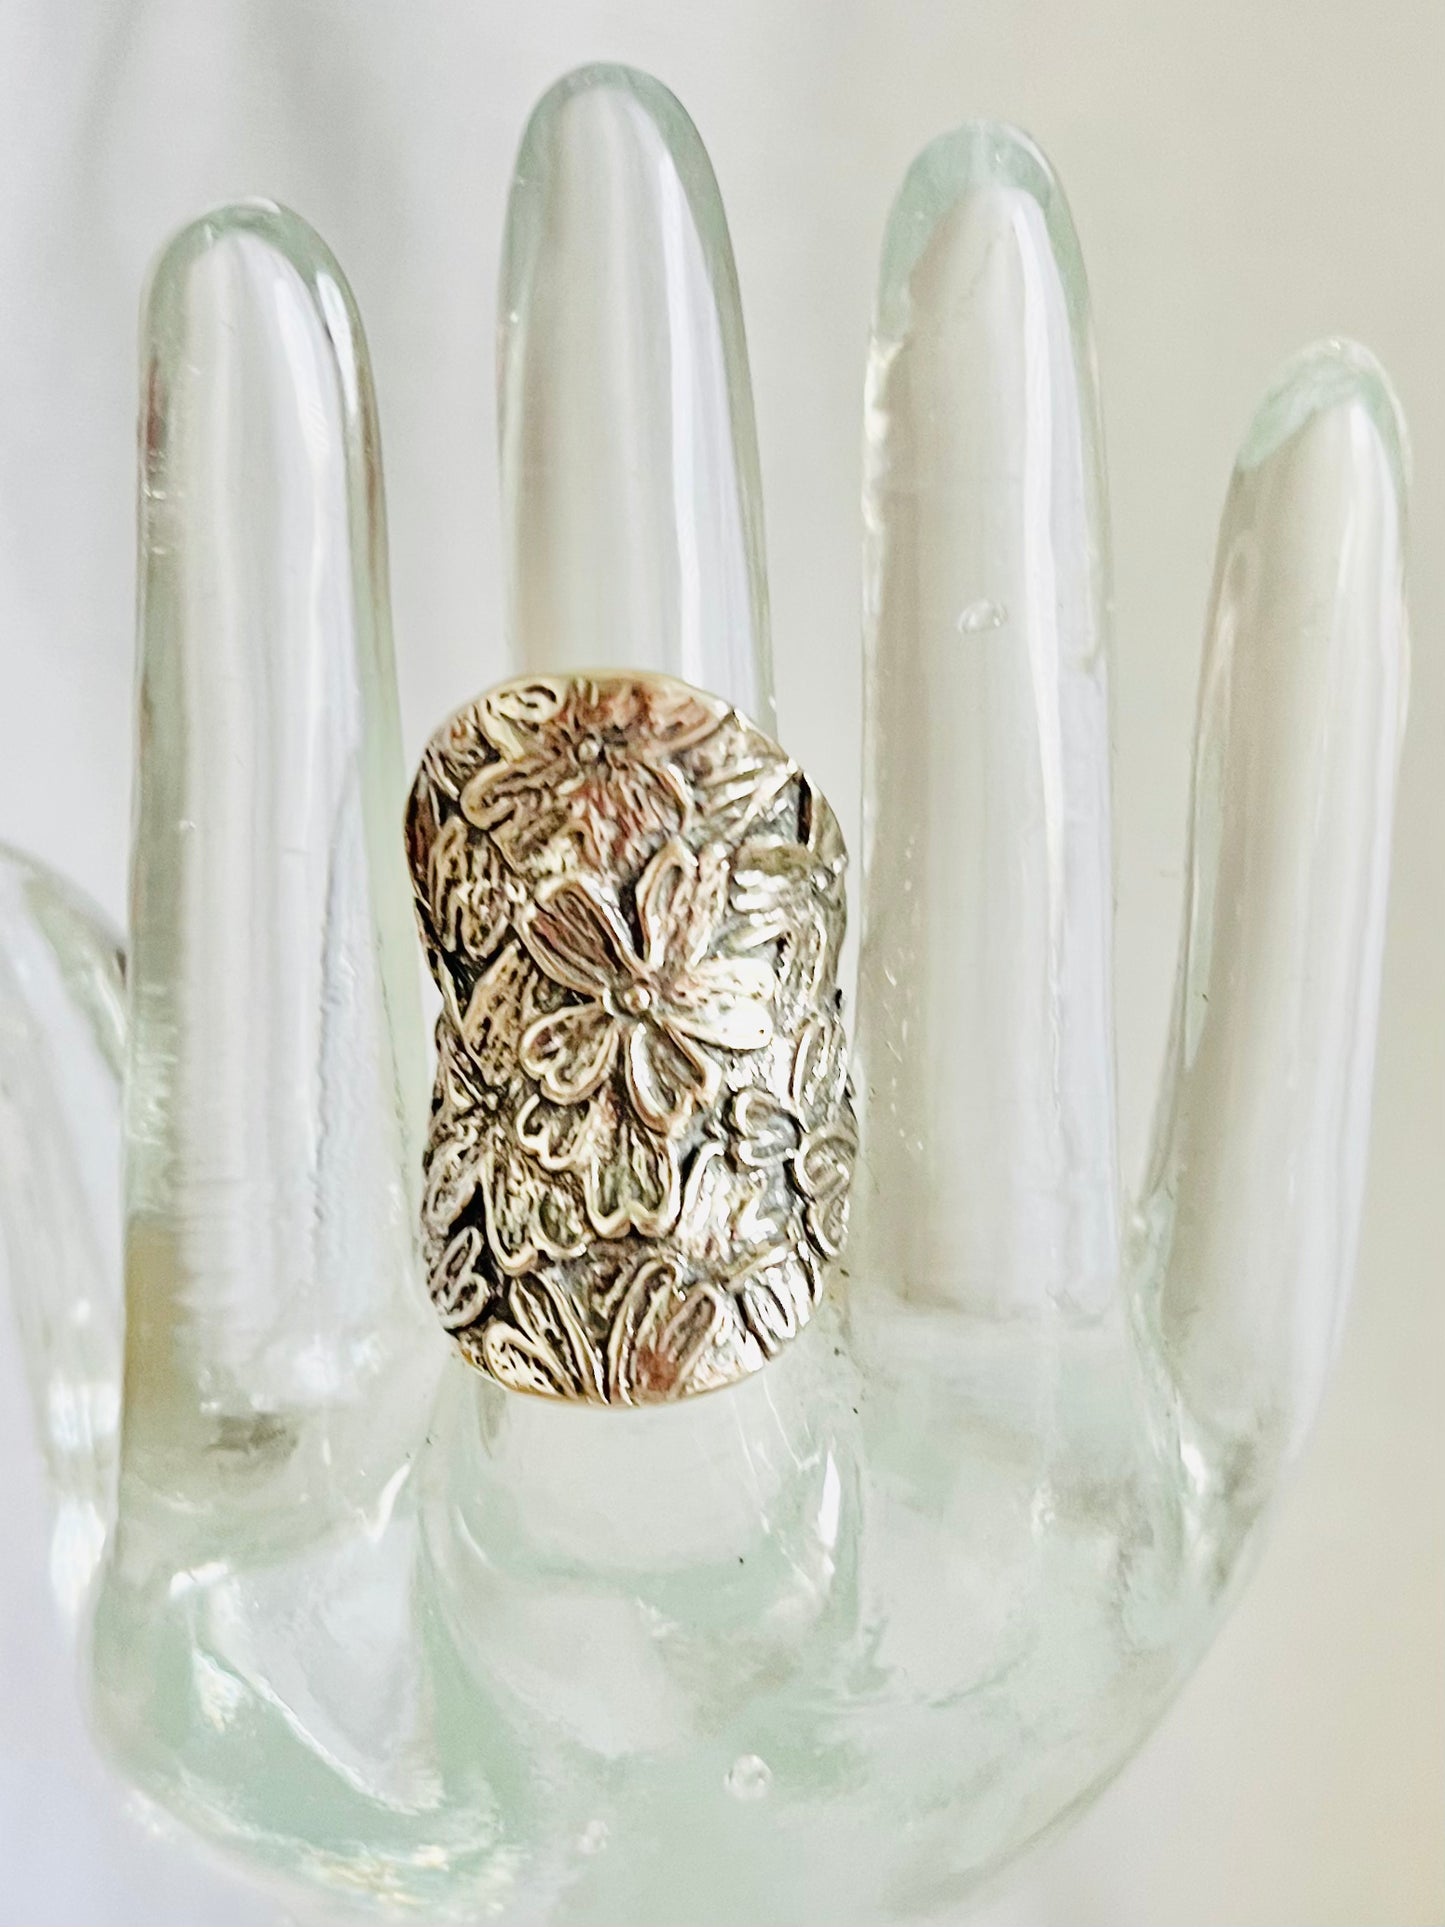 Vintage Sterling Silver Israeli Floral Ring